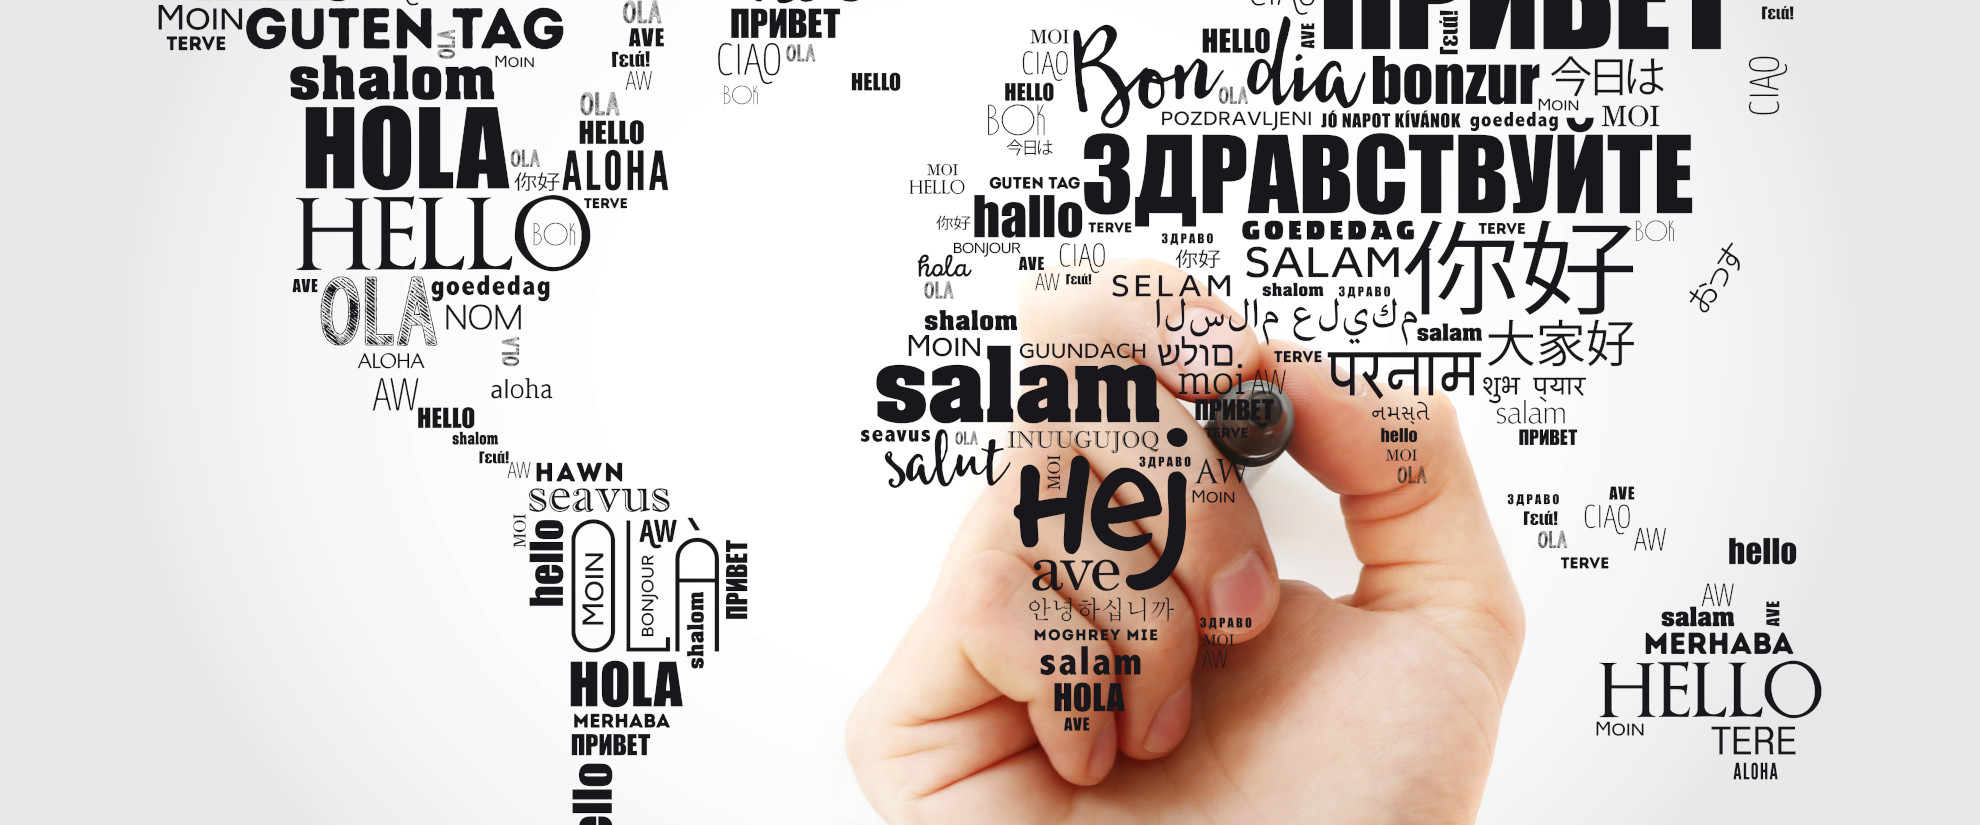 Weltkarte mit dem Wort Guten Tag in verschiedenen Sprachen auf grauem Hintergrund.